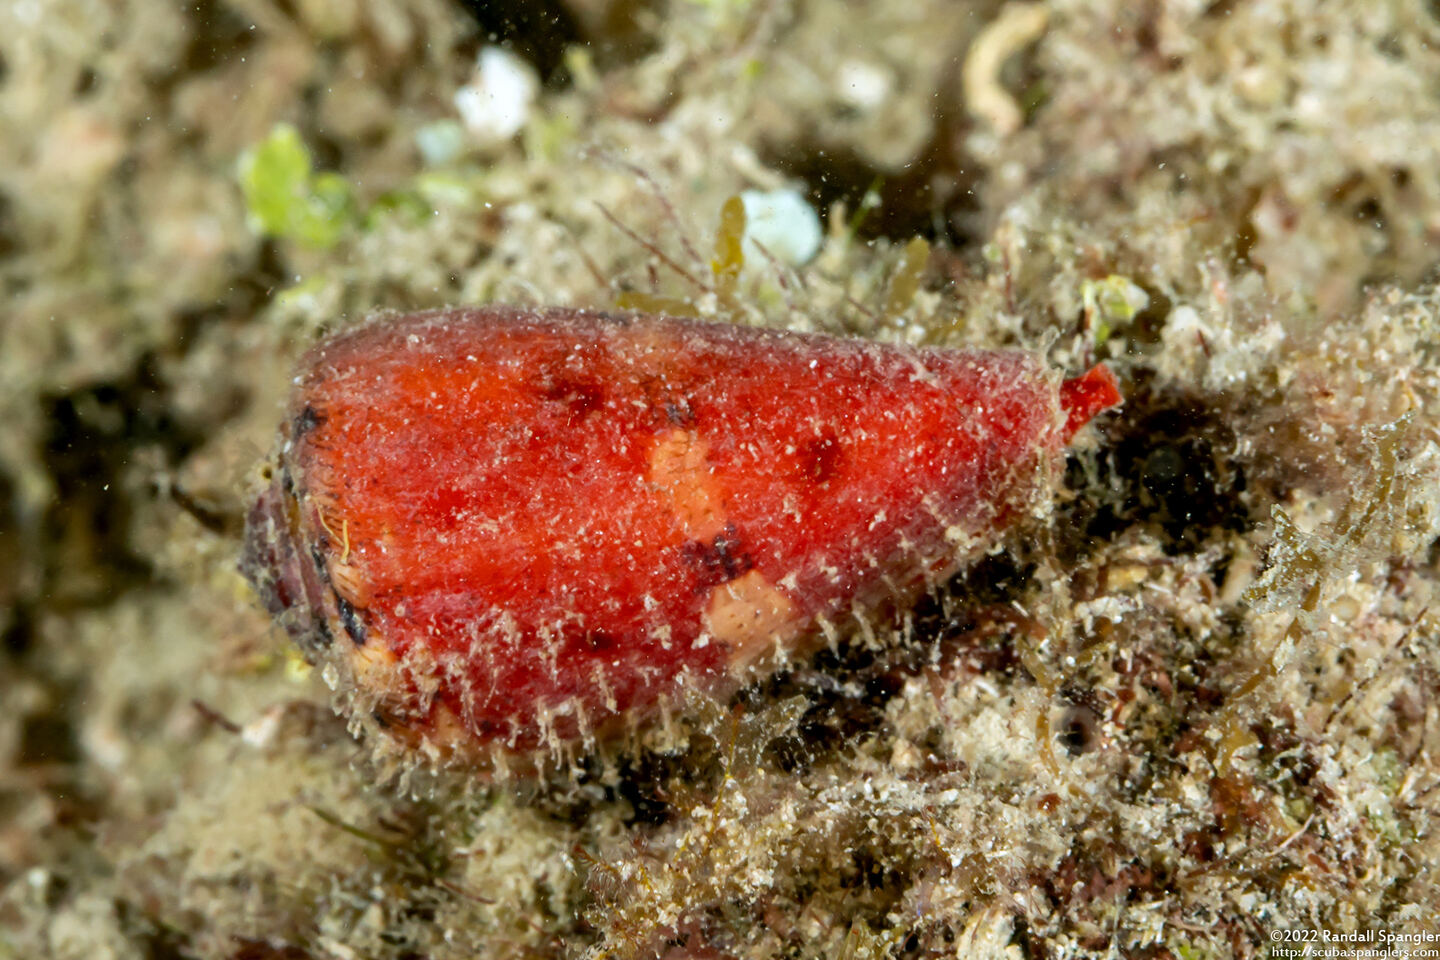 Conus cardinalis (Cardinal Cone Snail)